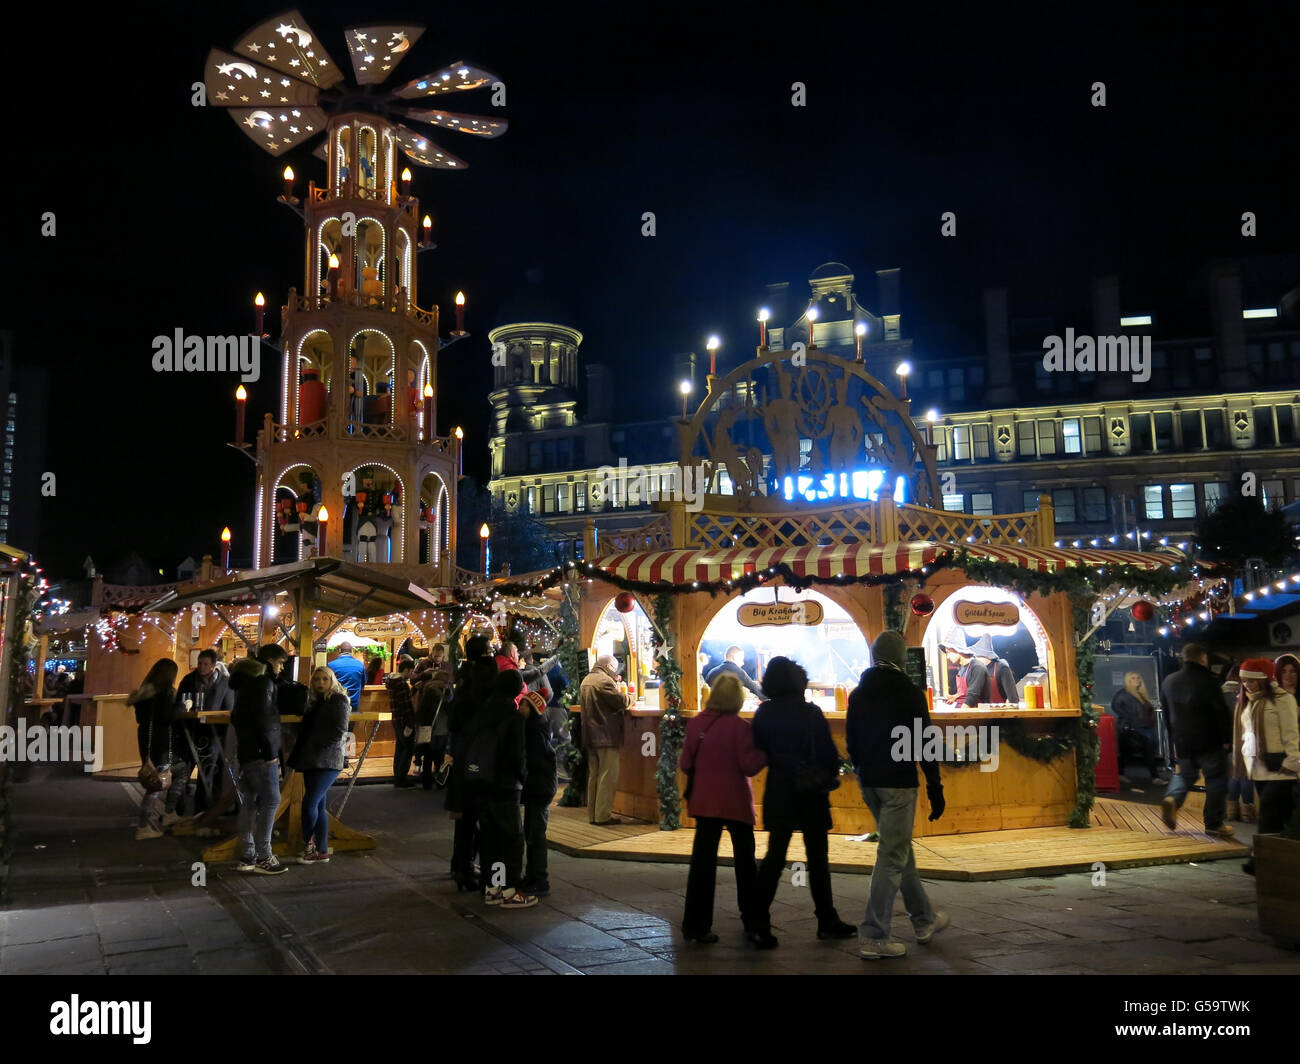 Scena notturna con persone sul mercato di Natale a Manchester in Inghilterra, Regno Unito Foto Stock